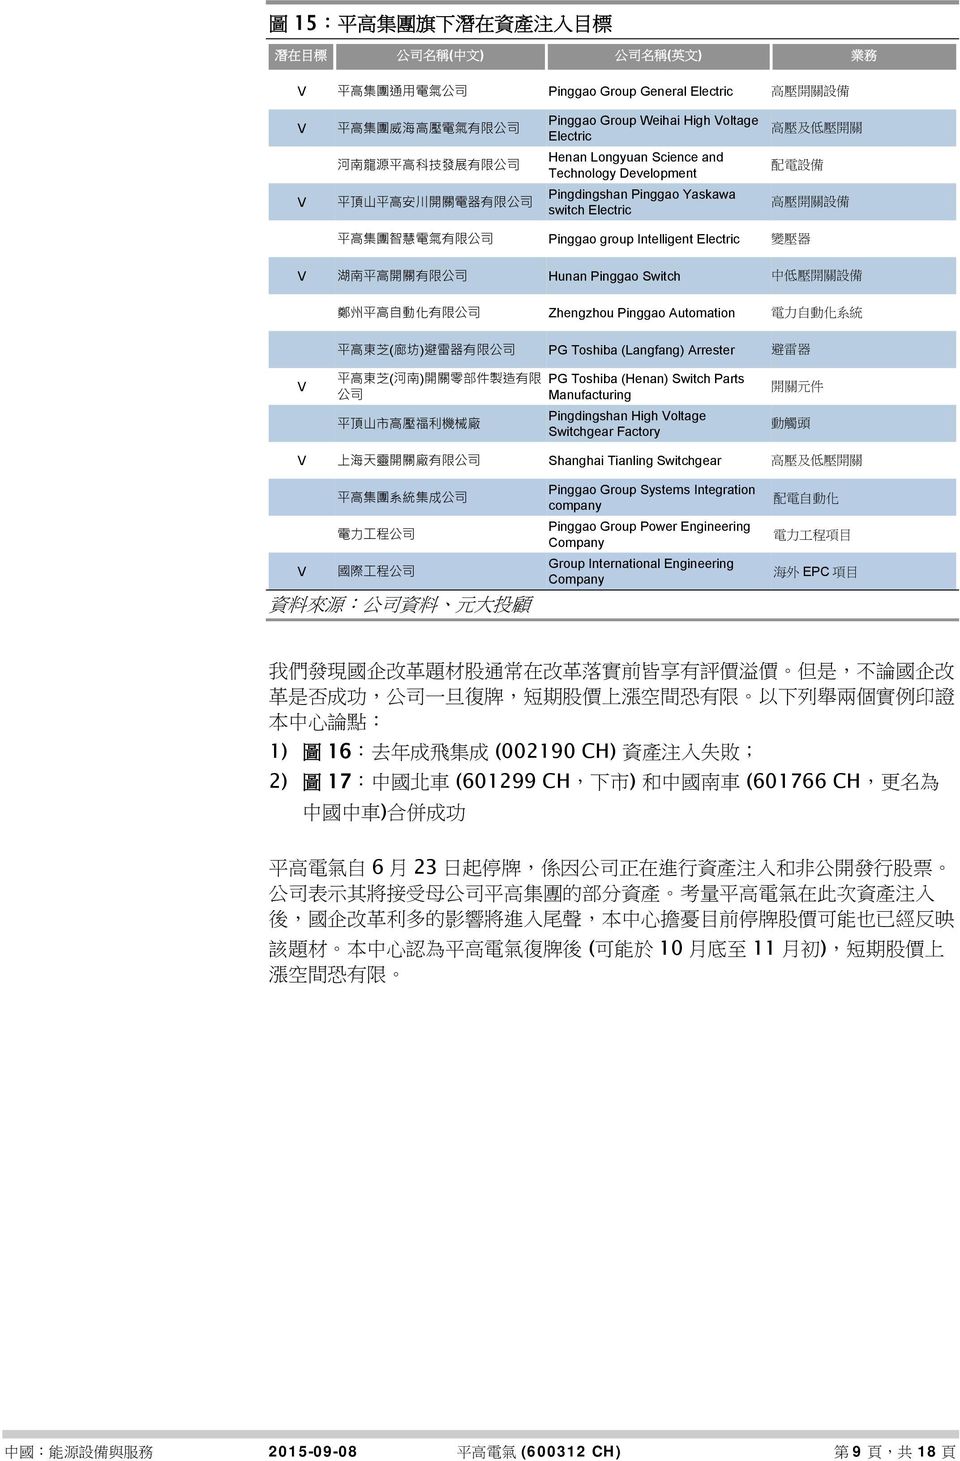 關 設 備 平 高 集 團 智 慧 電 氣 有 限 公 司 Pinggao group Intelligent Electric 變 壓 器 V 湖 南 平 高 開 關 有 限 公 司 Hunan Pinggao Switch 中 低 壓 開 關 設 備 鄭 州 平 高 自 動 化 有 限 公 司 Zhengzhou Pinggao Automation 電 力 自 動 化 系 統 平 高 東